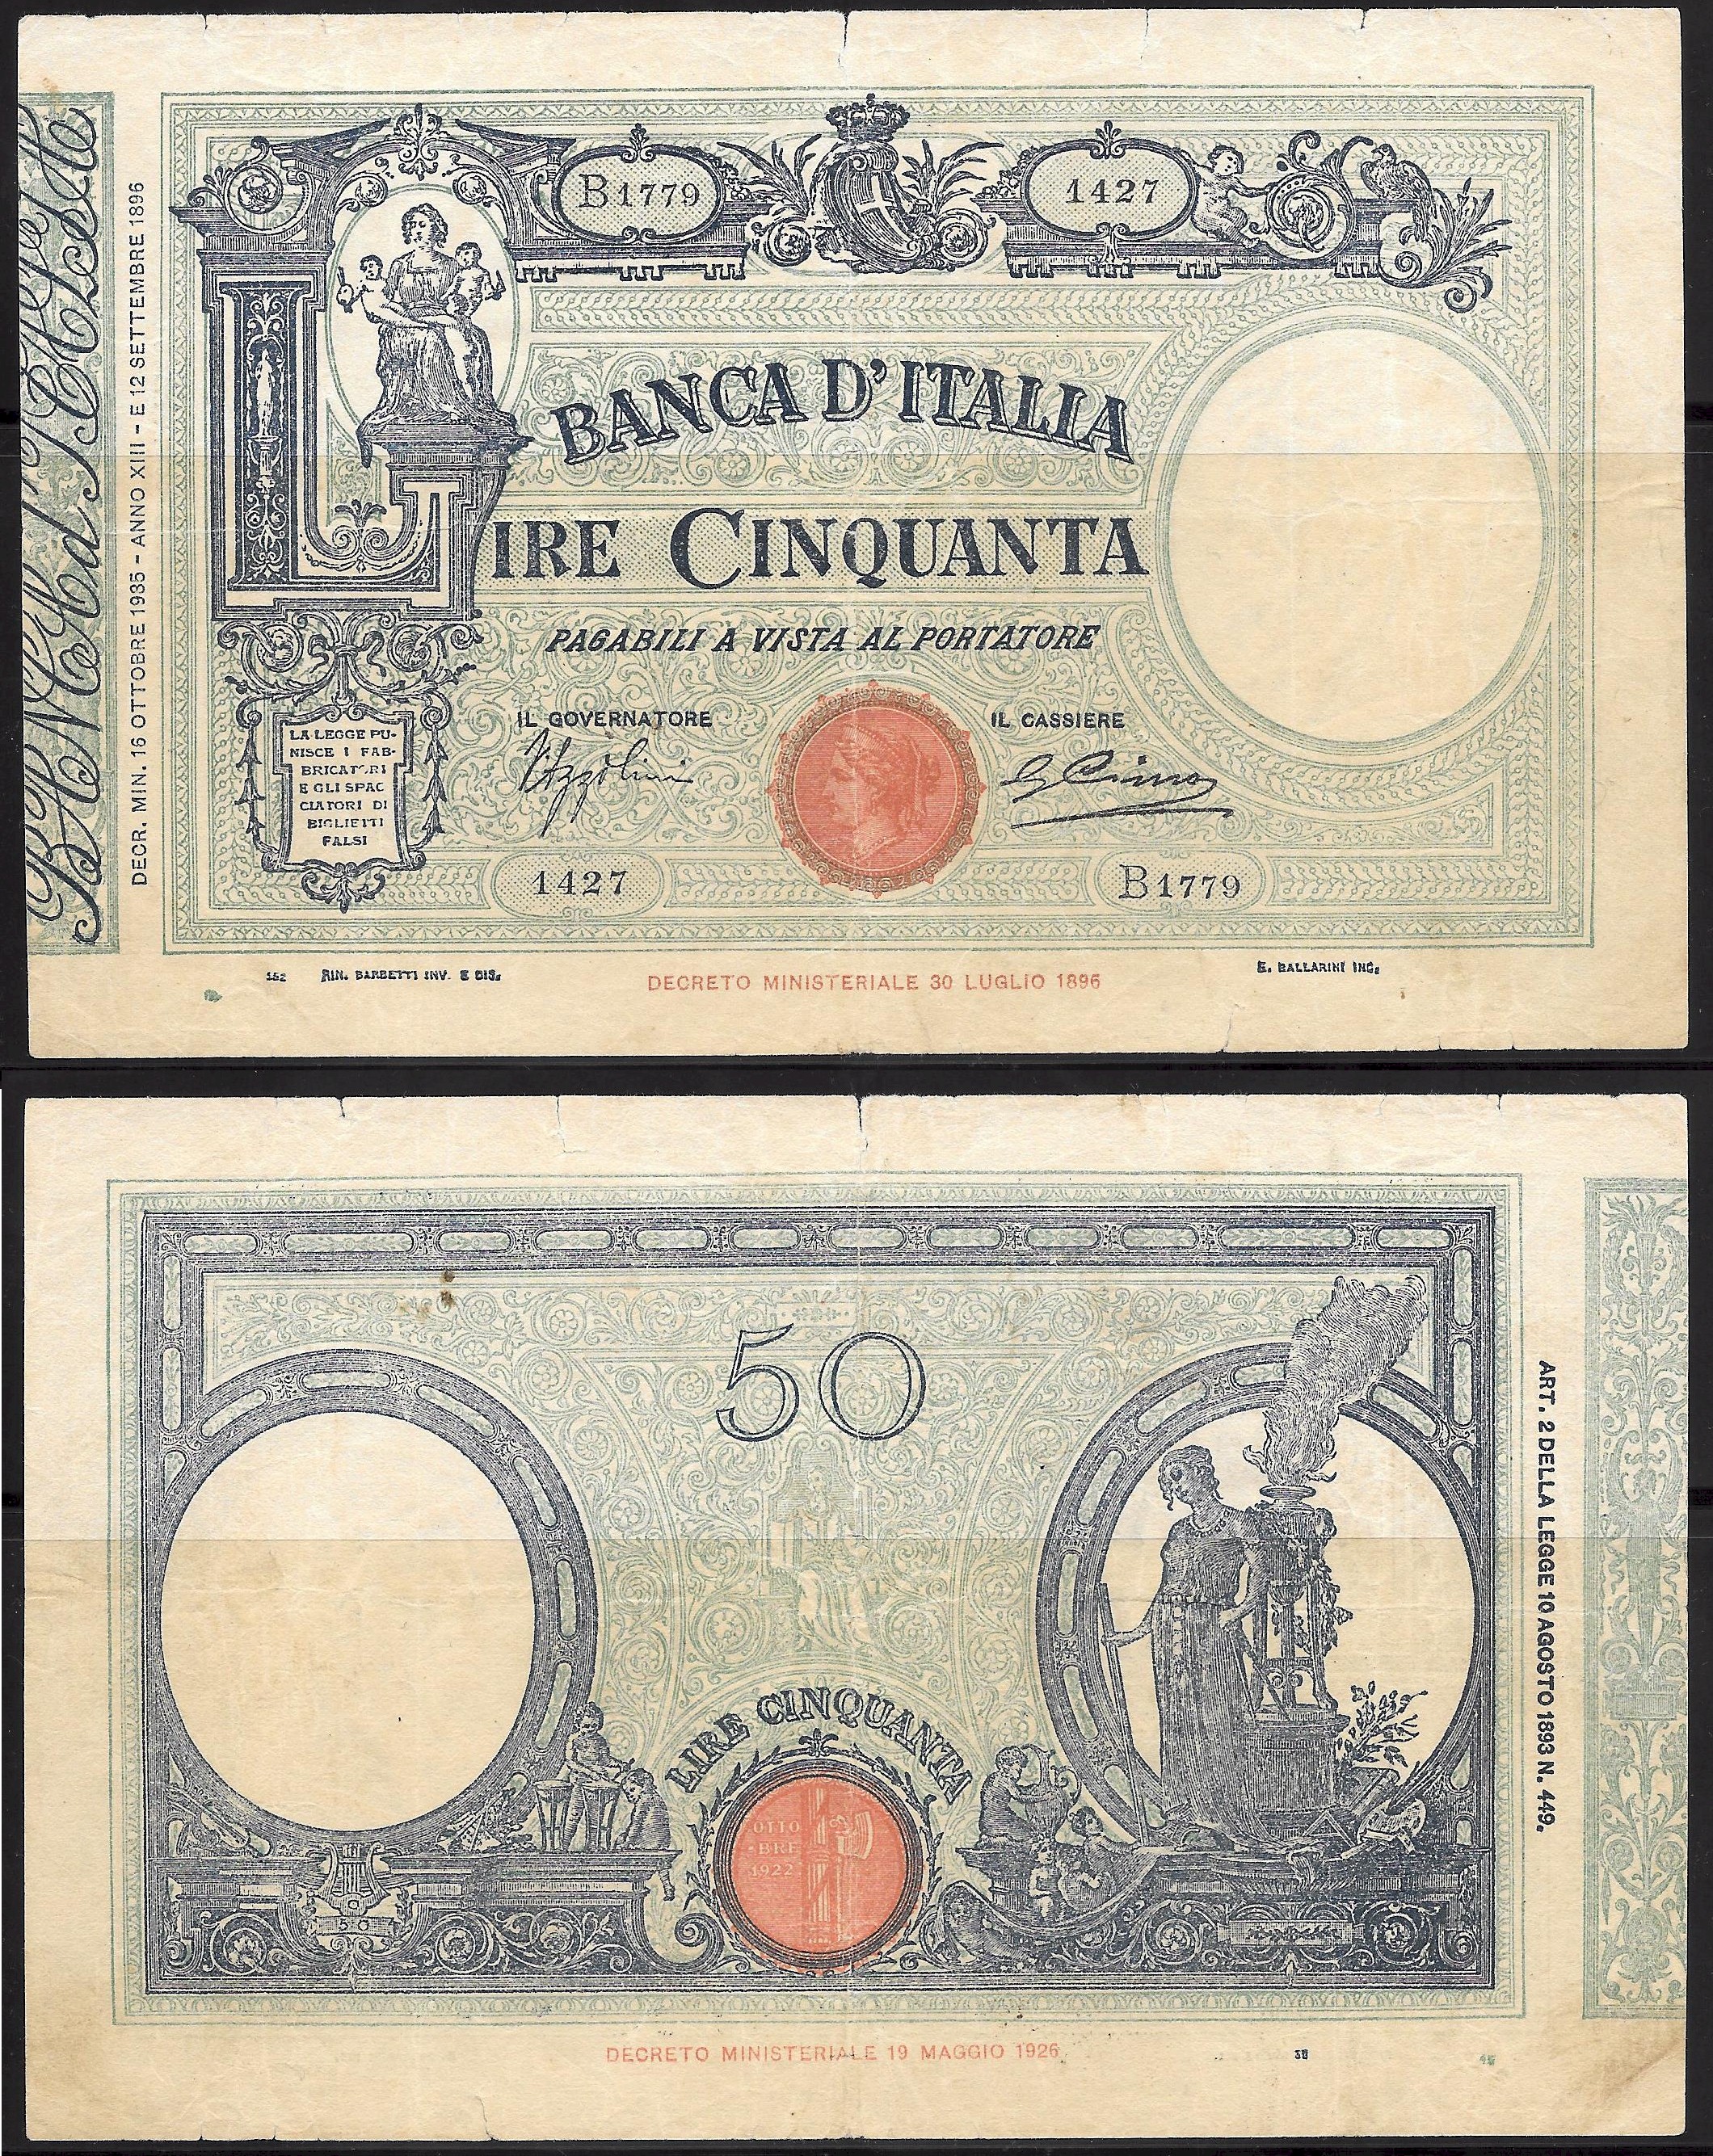 Vittorio Emanuele III - cinquanta lire - dec. min. 16-10-1935